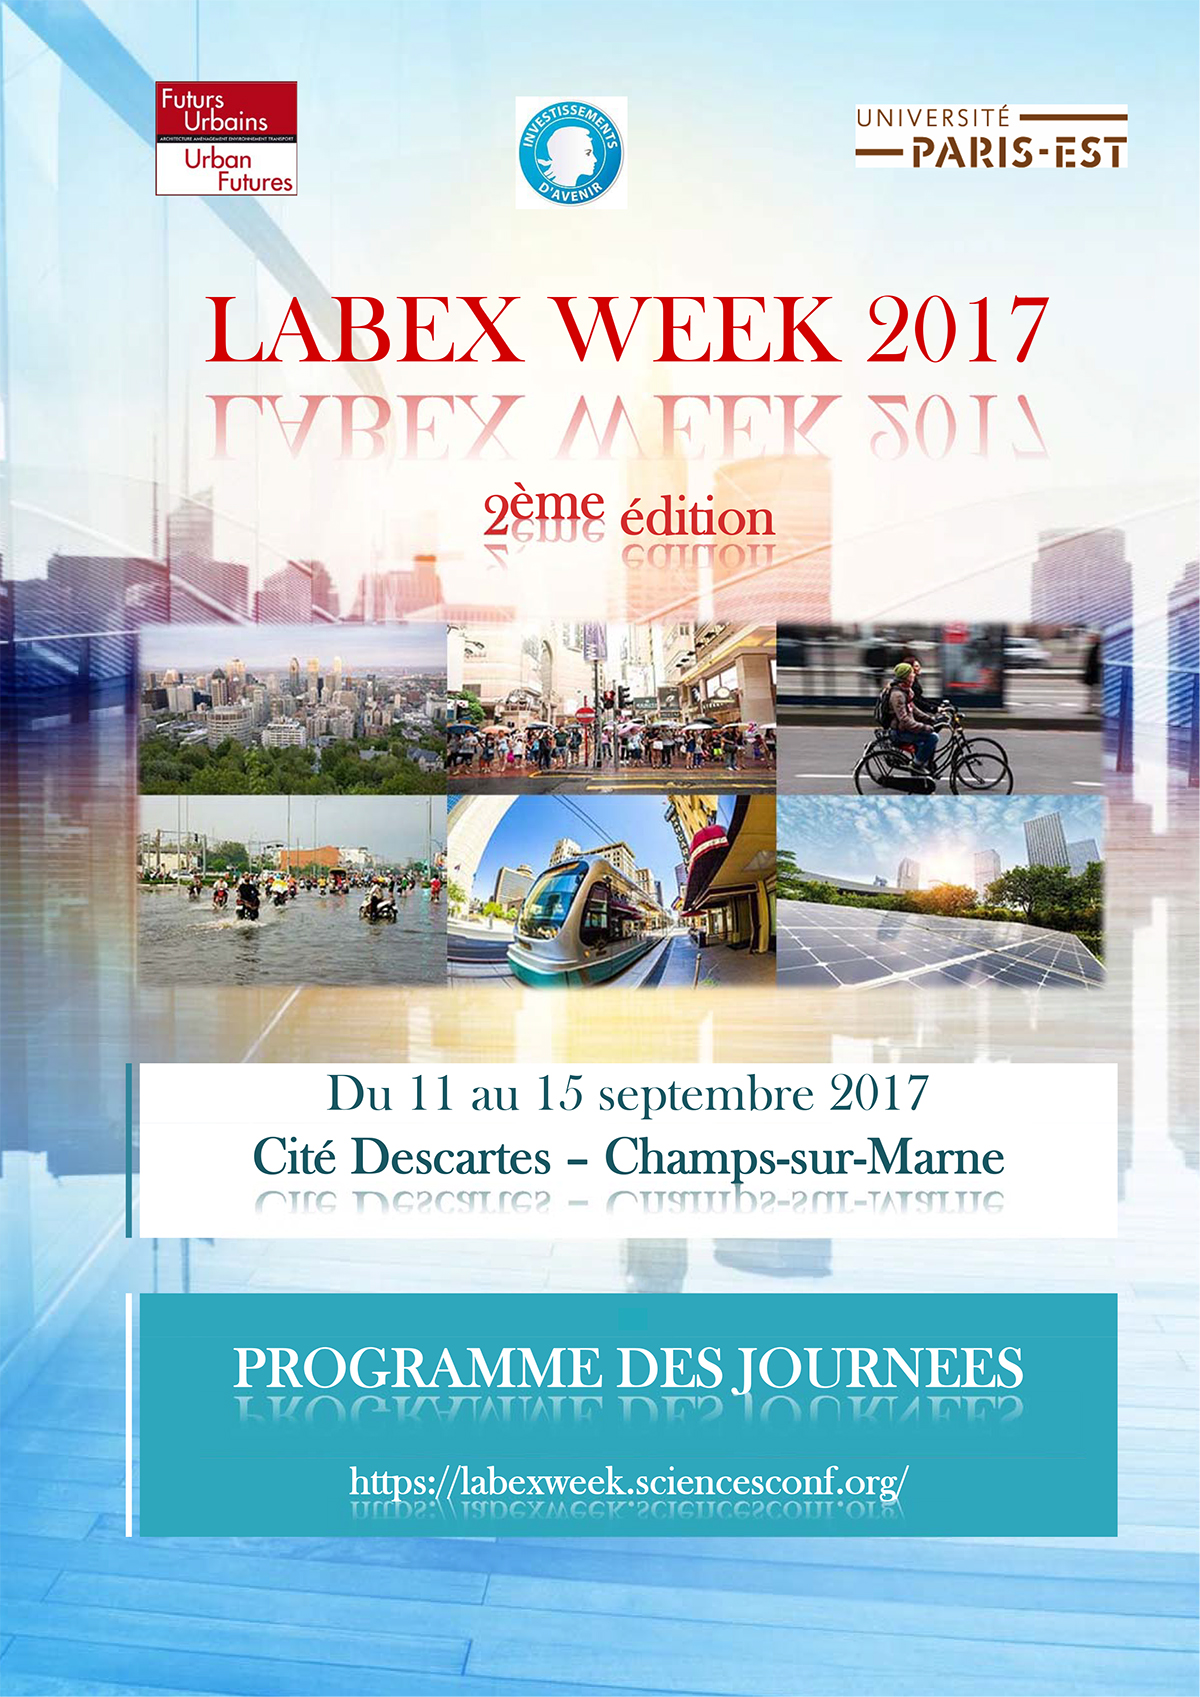 LABEX_WEEK_2017_Programme_des_Journees_11_au_15_09_17_Definitif_280817_1_copie.jpg